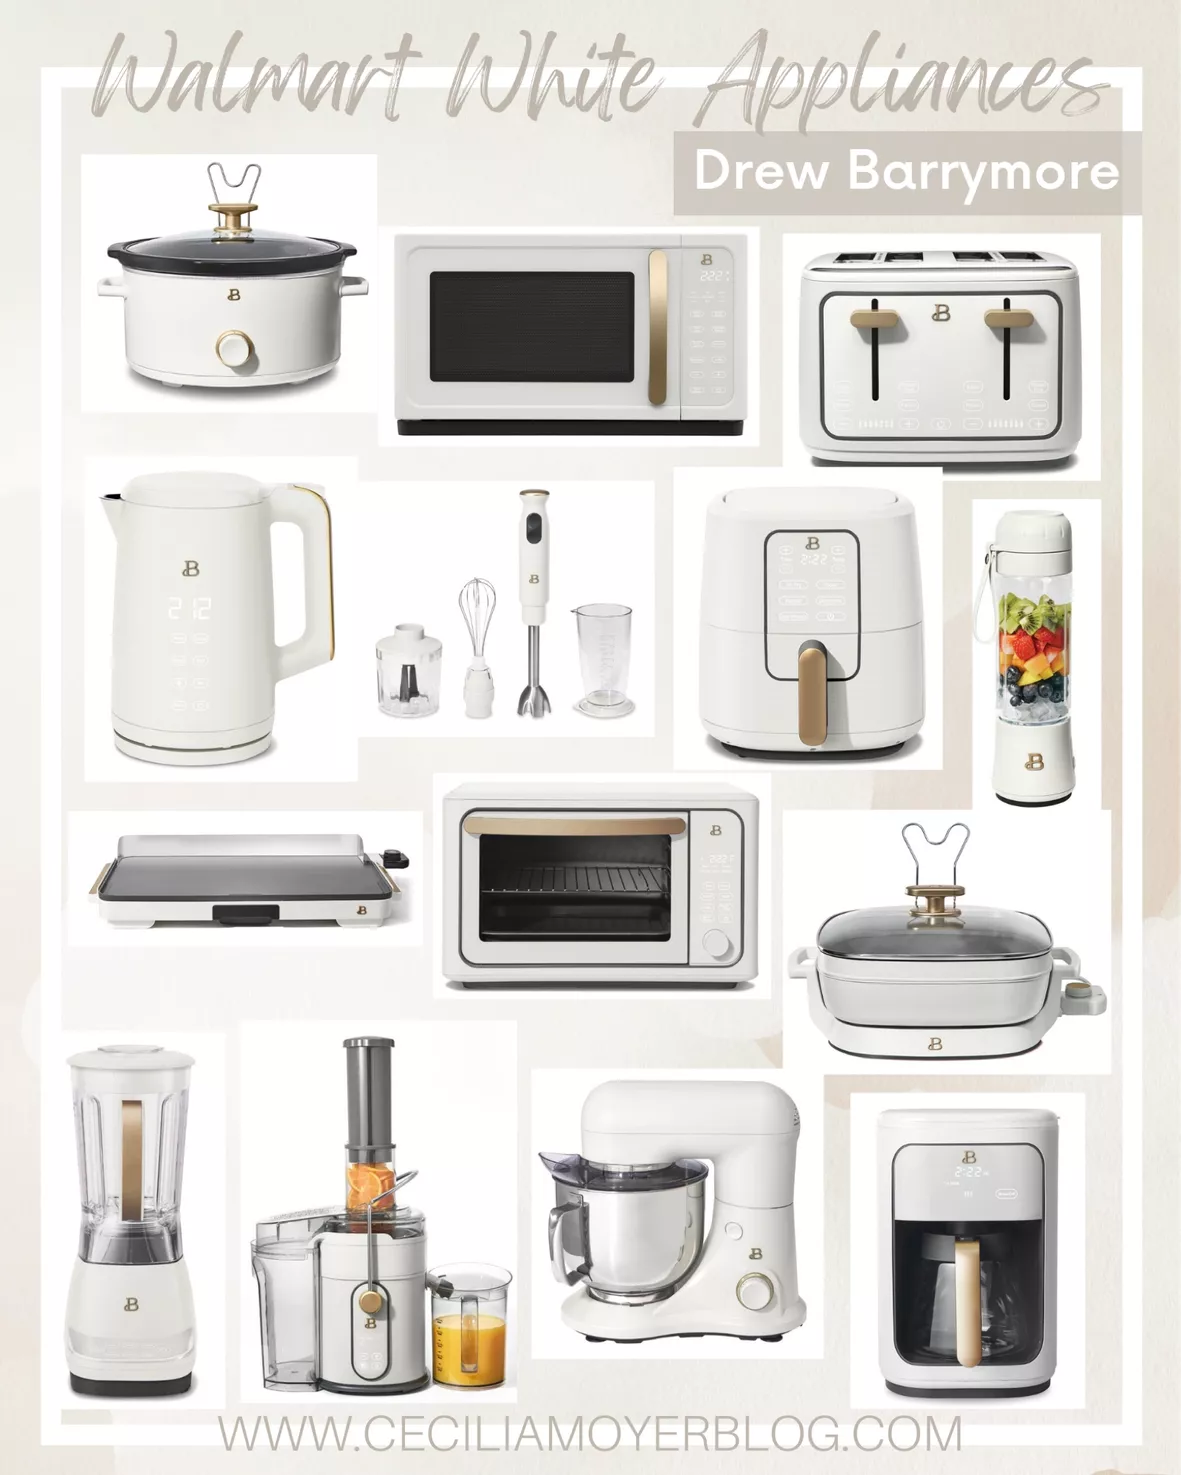  Drew Barrymore Appliances